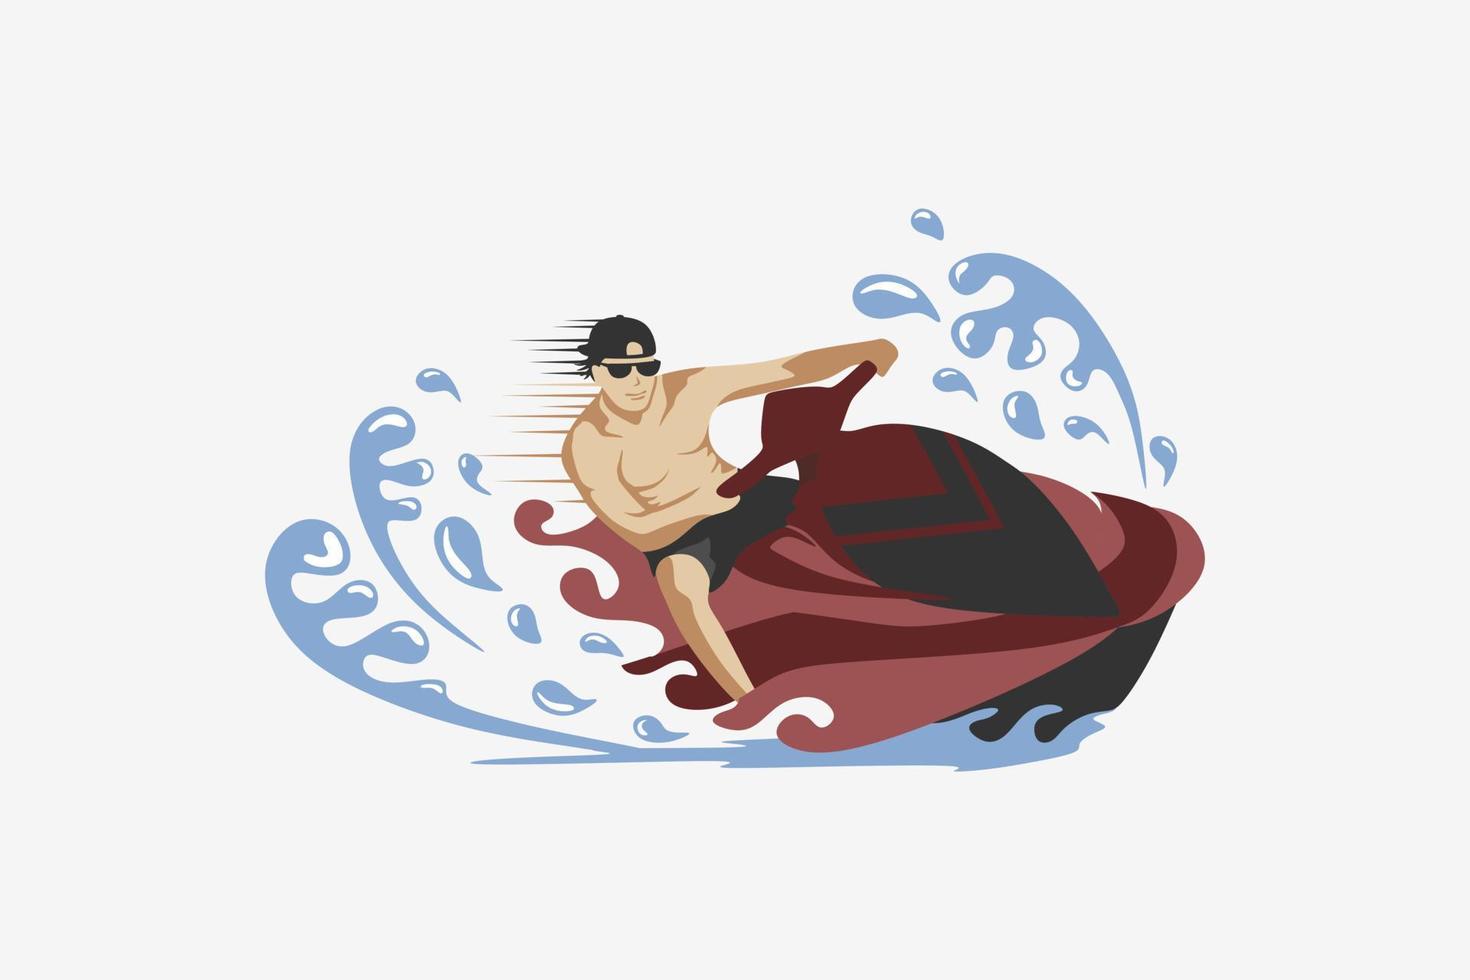 conception d'une personne conduisant un scooter des mers, illustration vectorielle d'un scooter des mers, sport de plein air d'été sur la plage ou la mer dans des couleurs pastel. vecteur